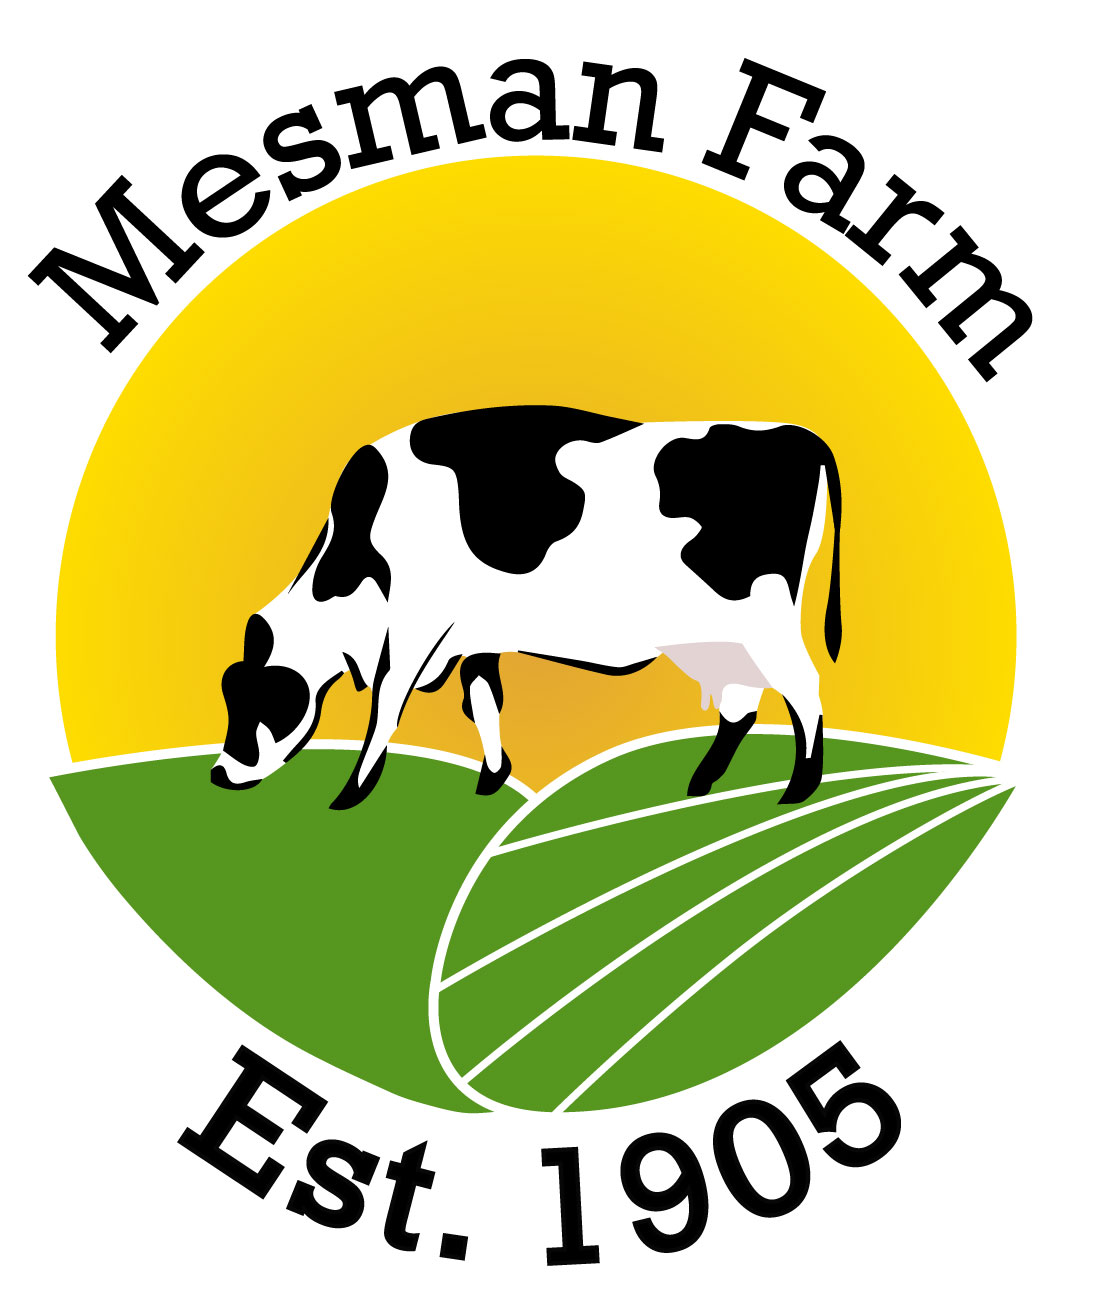 Mesman Farm, Est 1905, La Conner Washington, visit Skagit's farm stands